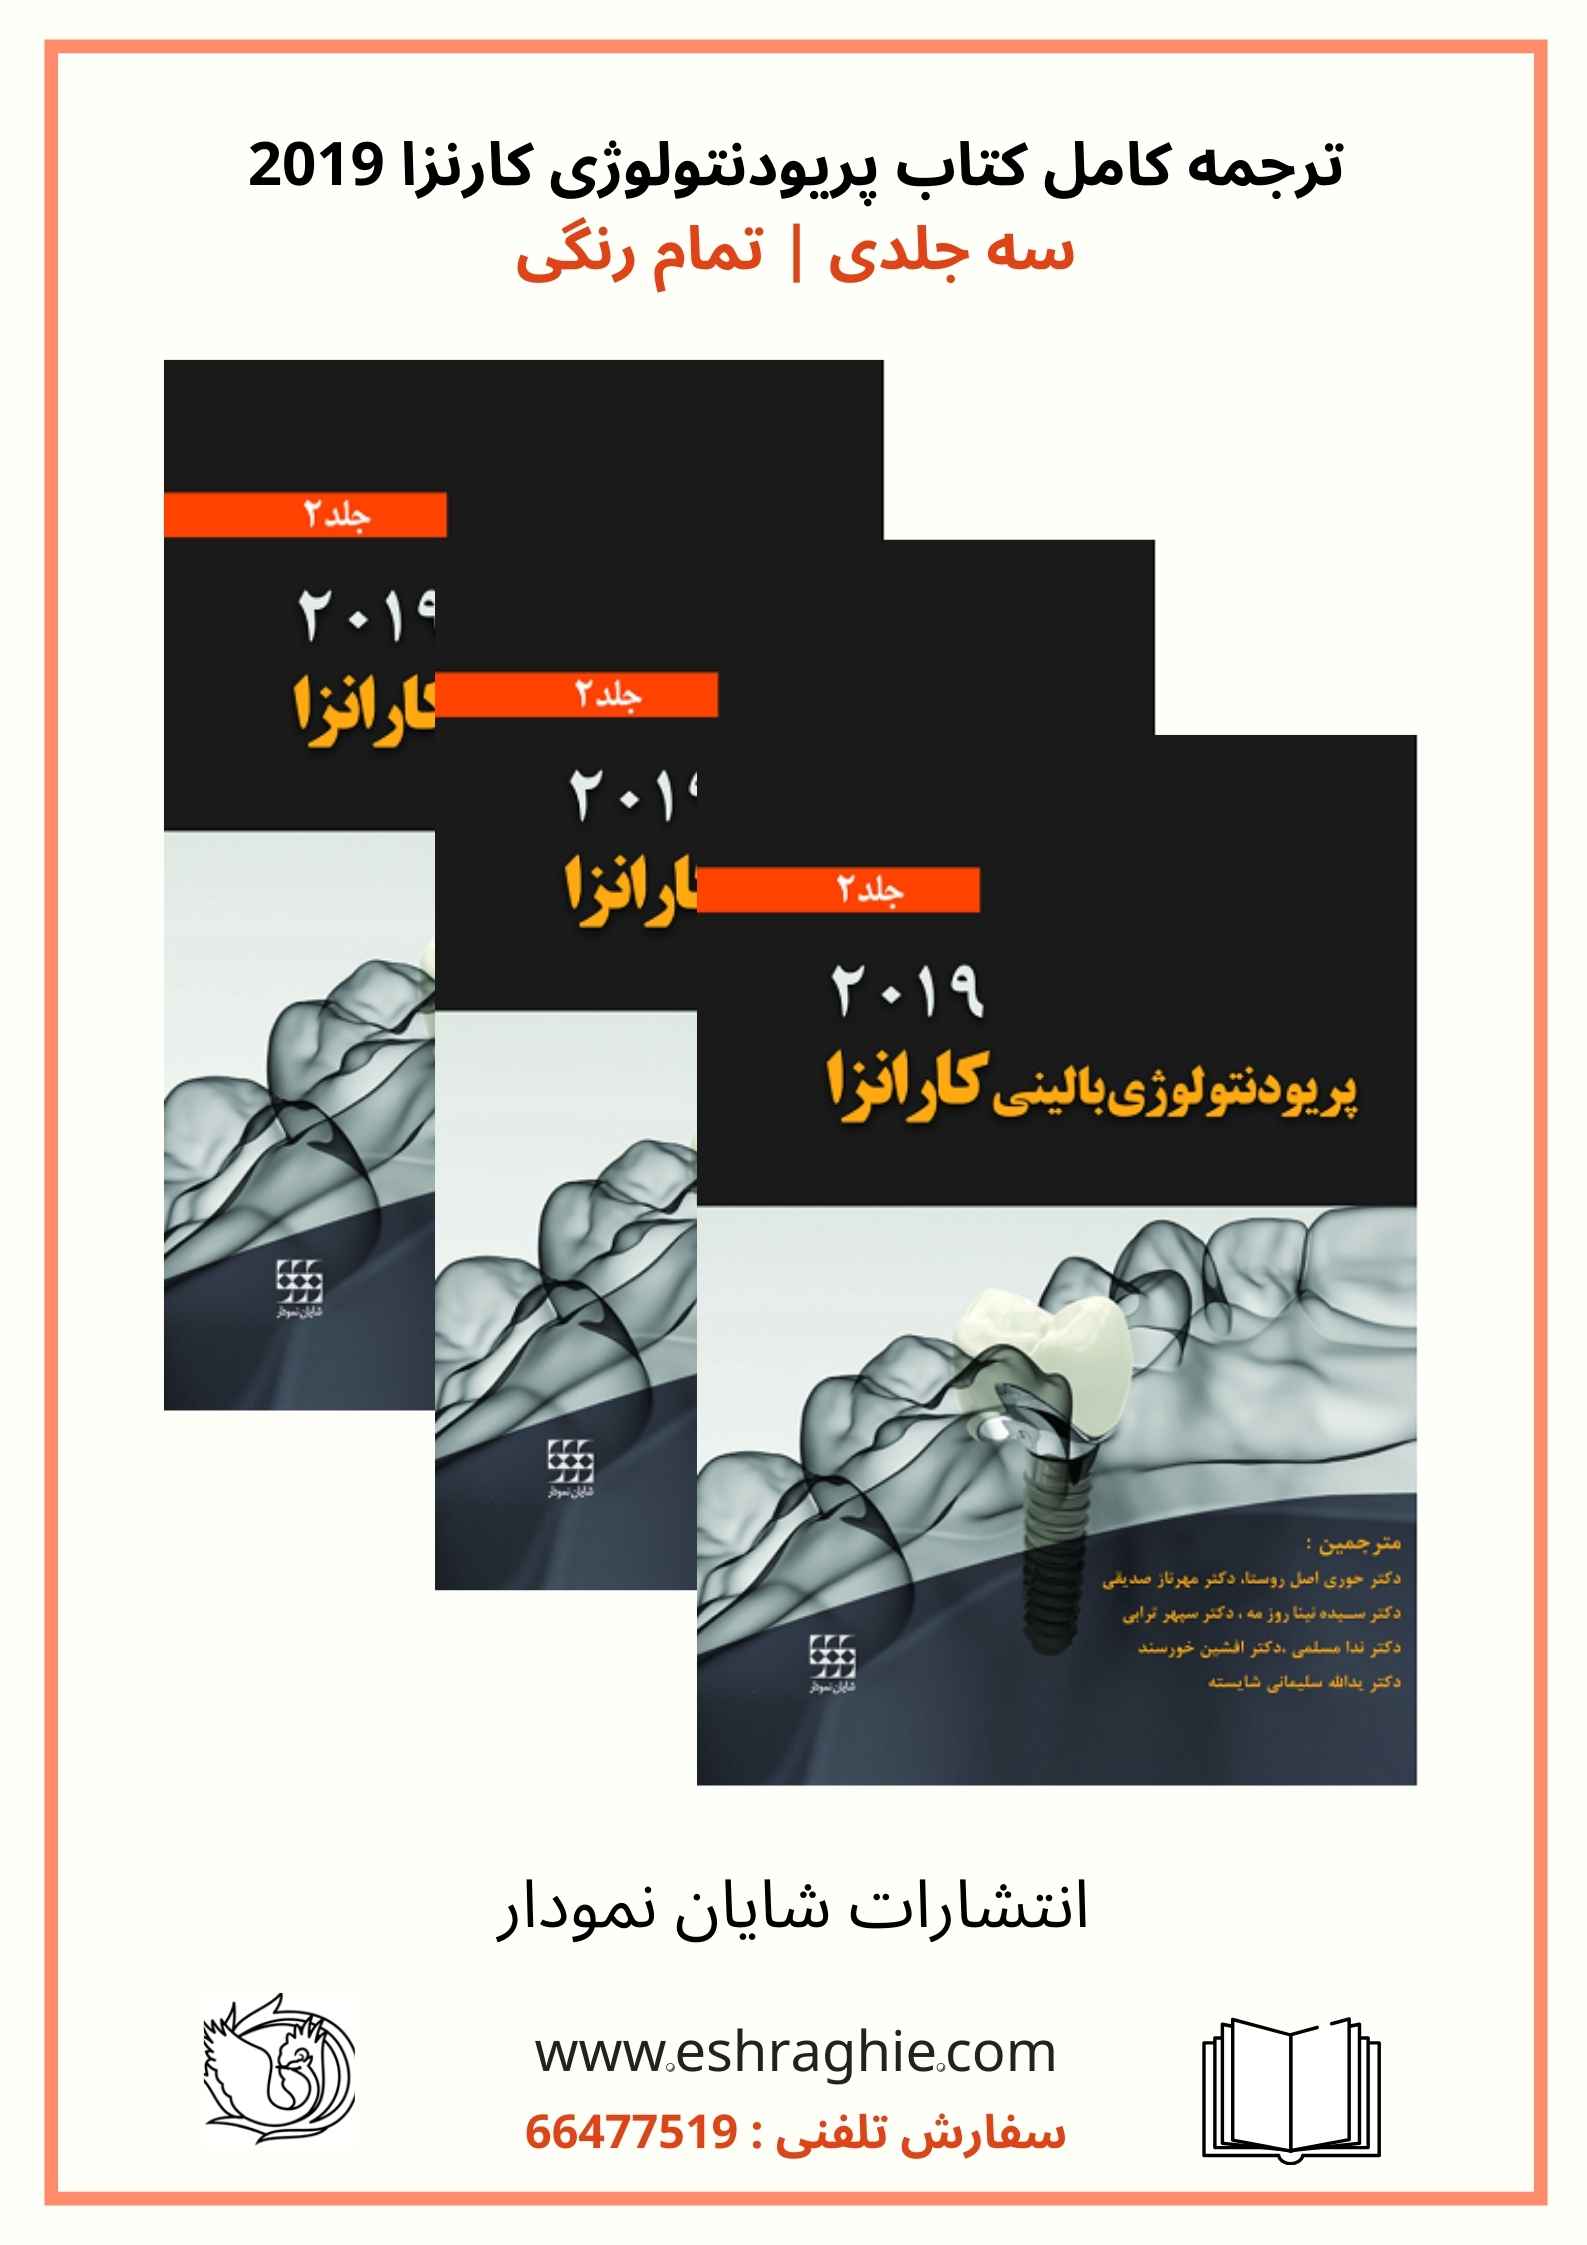 ترجمه کامل کتاب پریودنتولوژی کارنزا 2019 | سه جلدی | چاپ رنگی